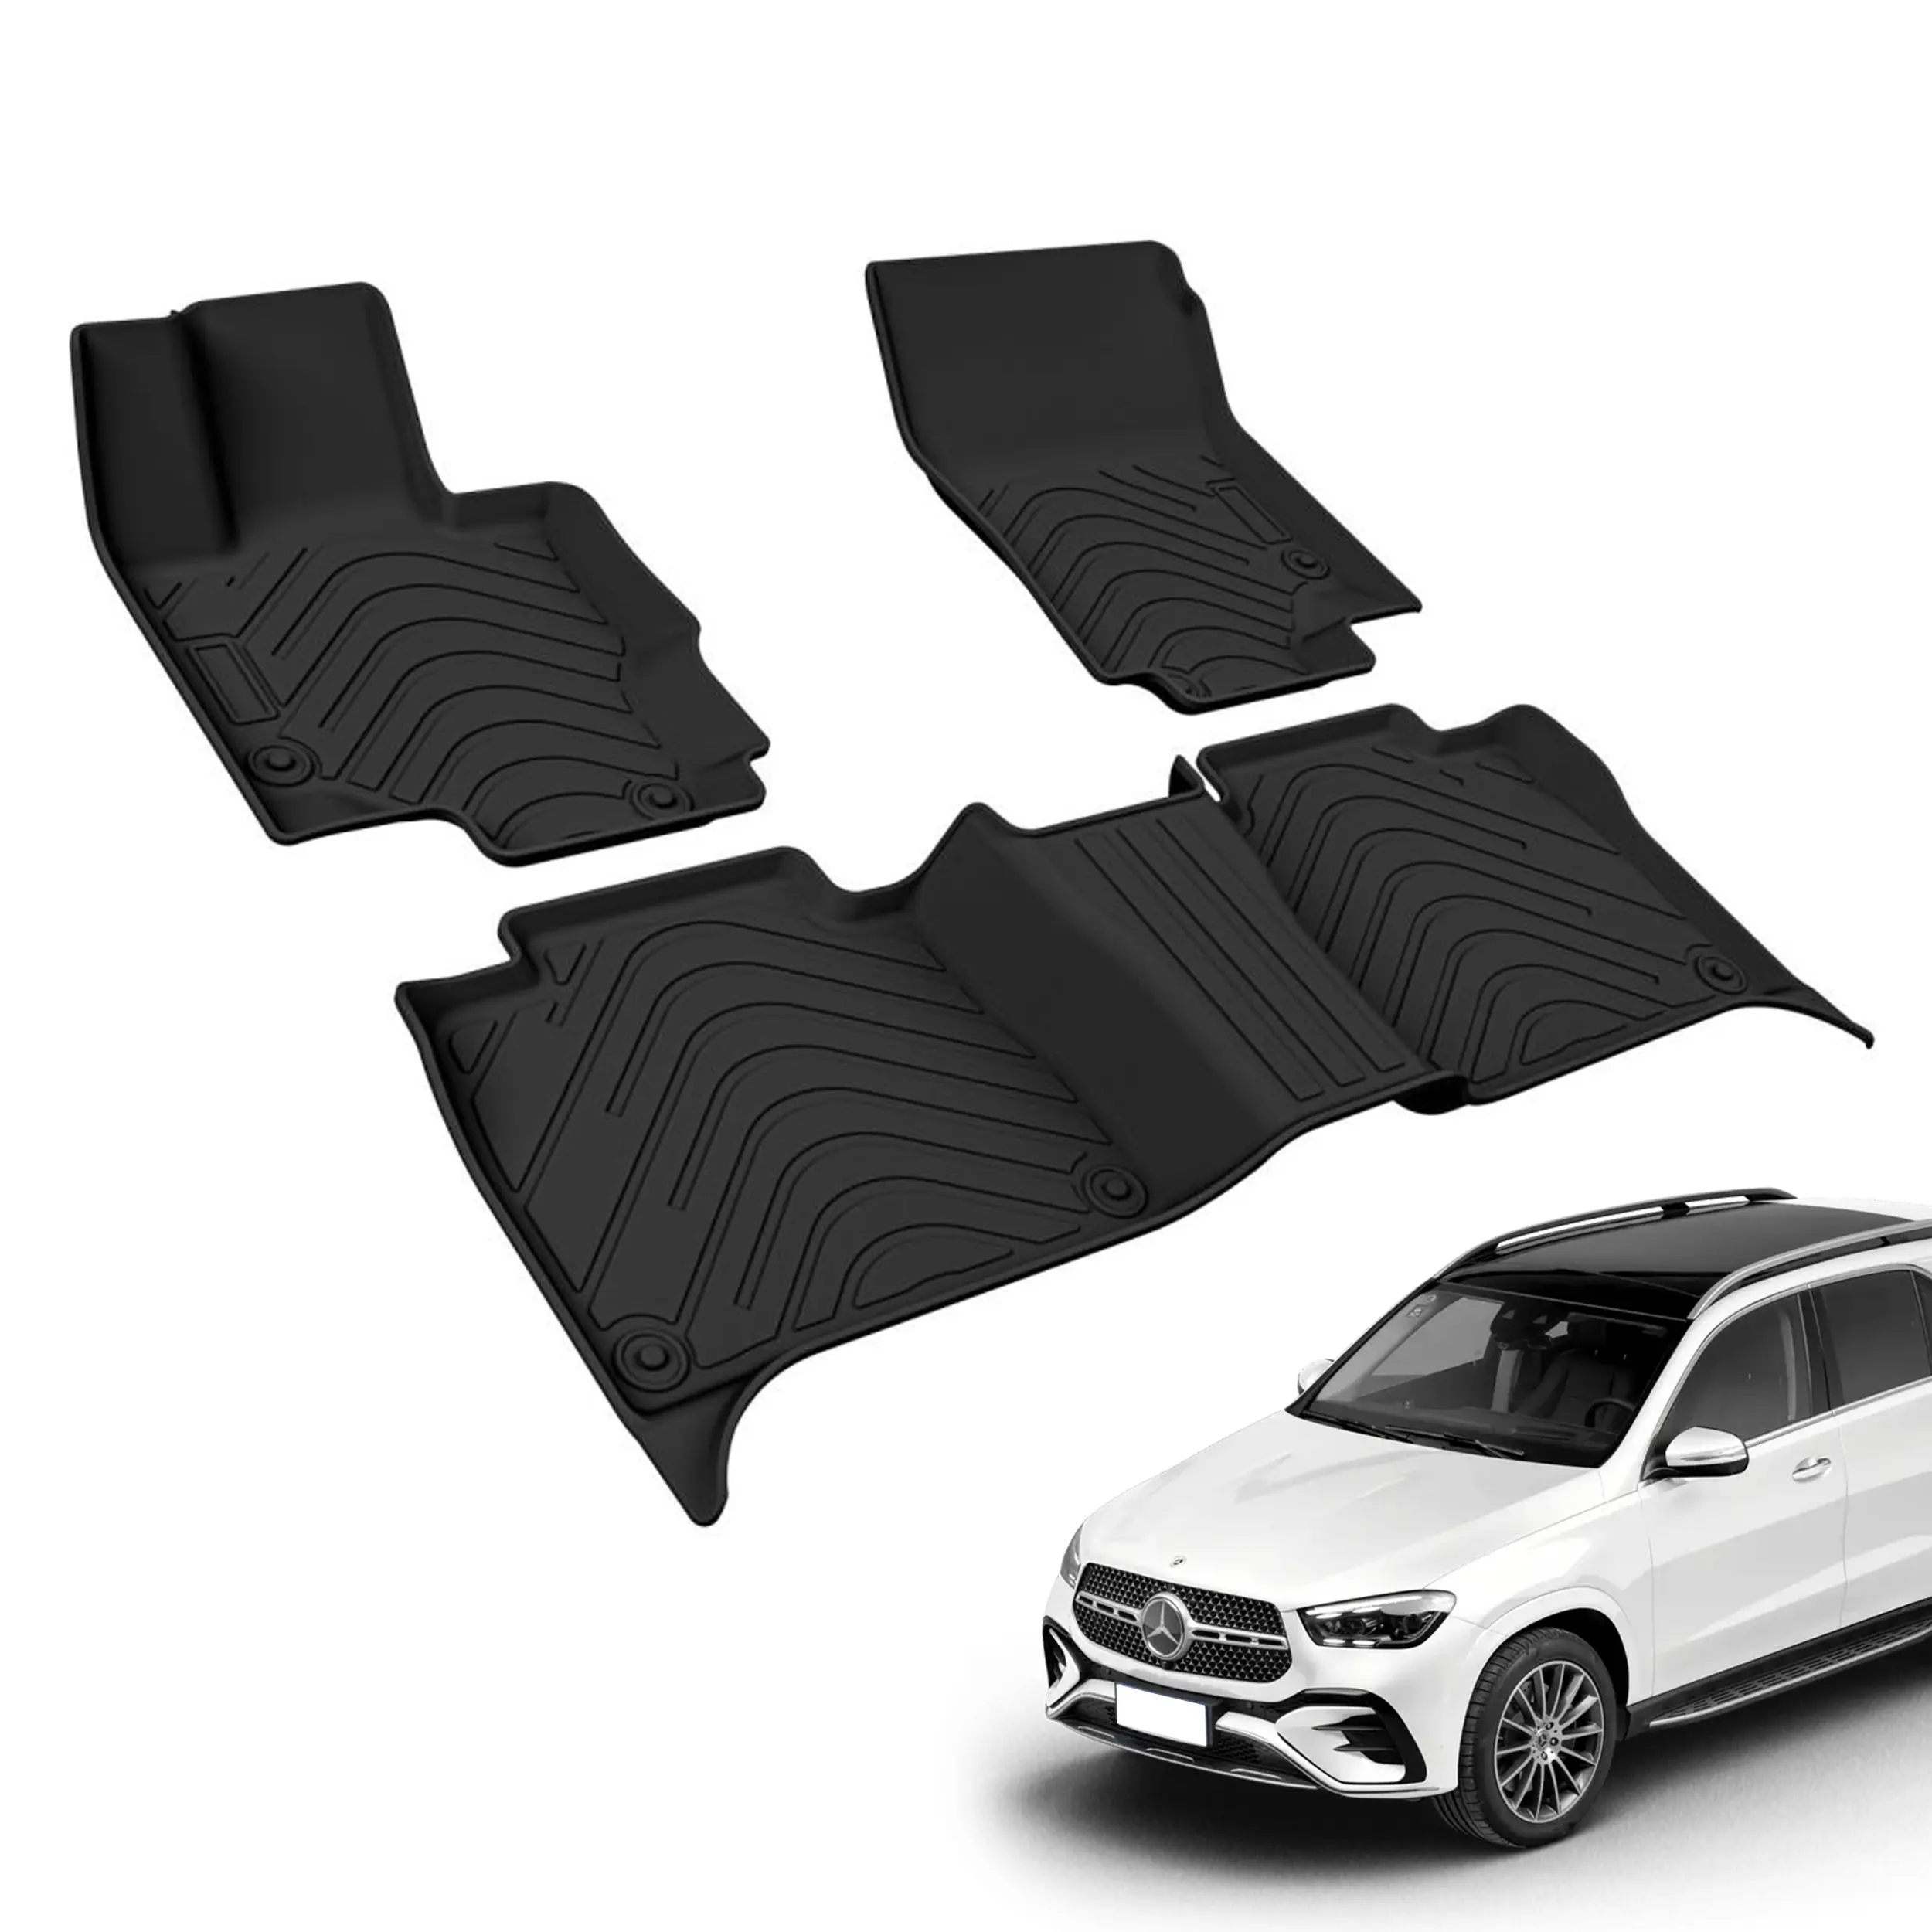 Alfombrilla de pie TPE para Benz GLE, accesorios de Interior de coche impermeables de alta calidad para todo tipo de clima, venta al por mayor